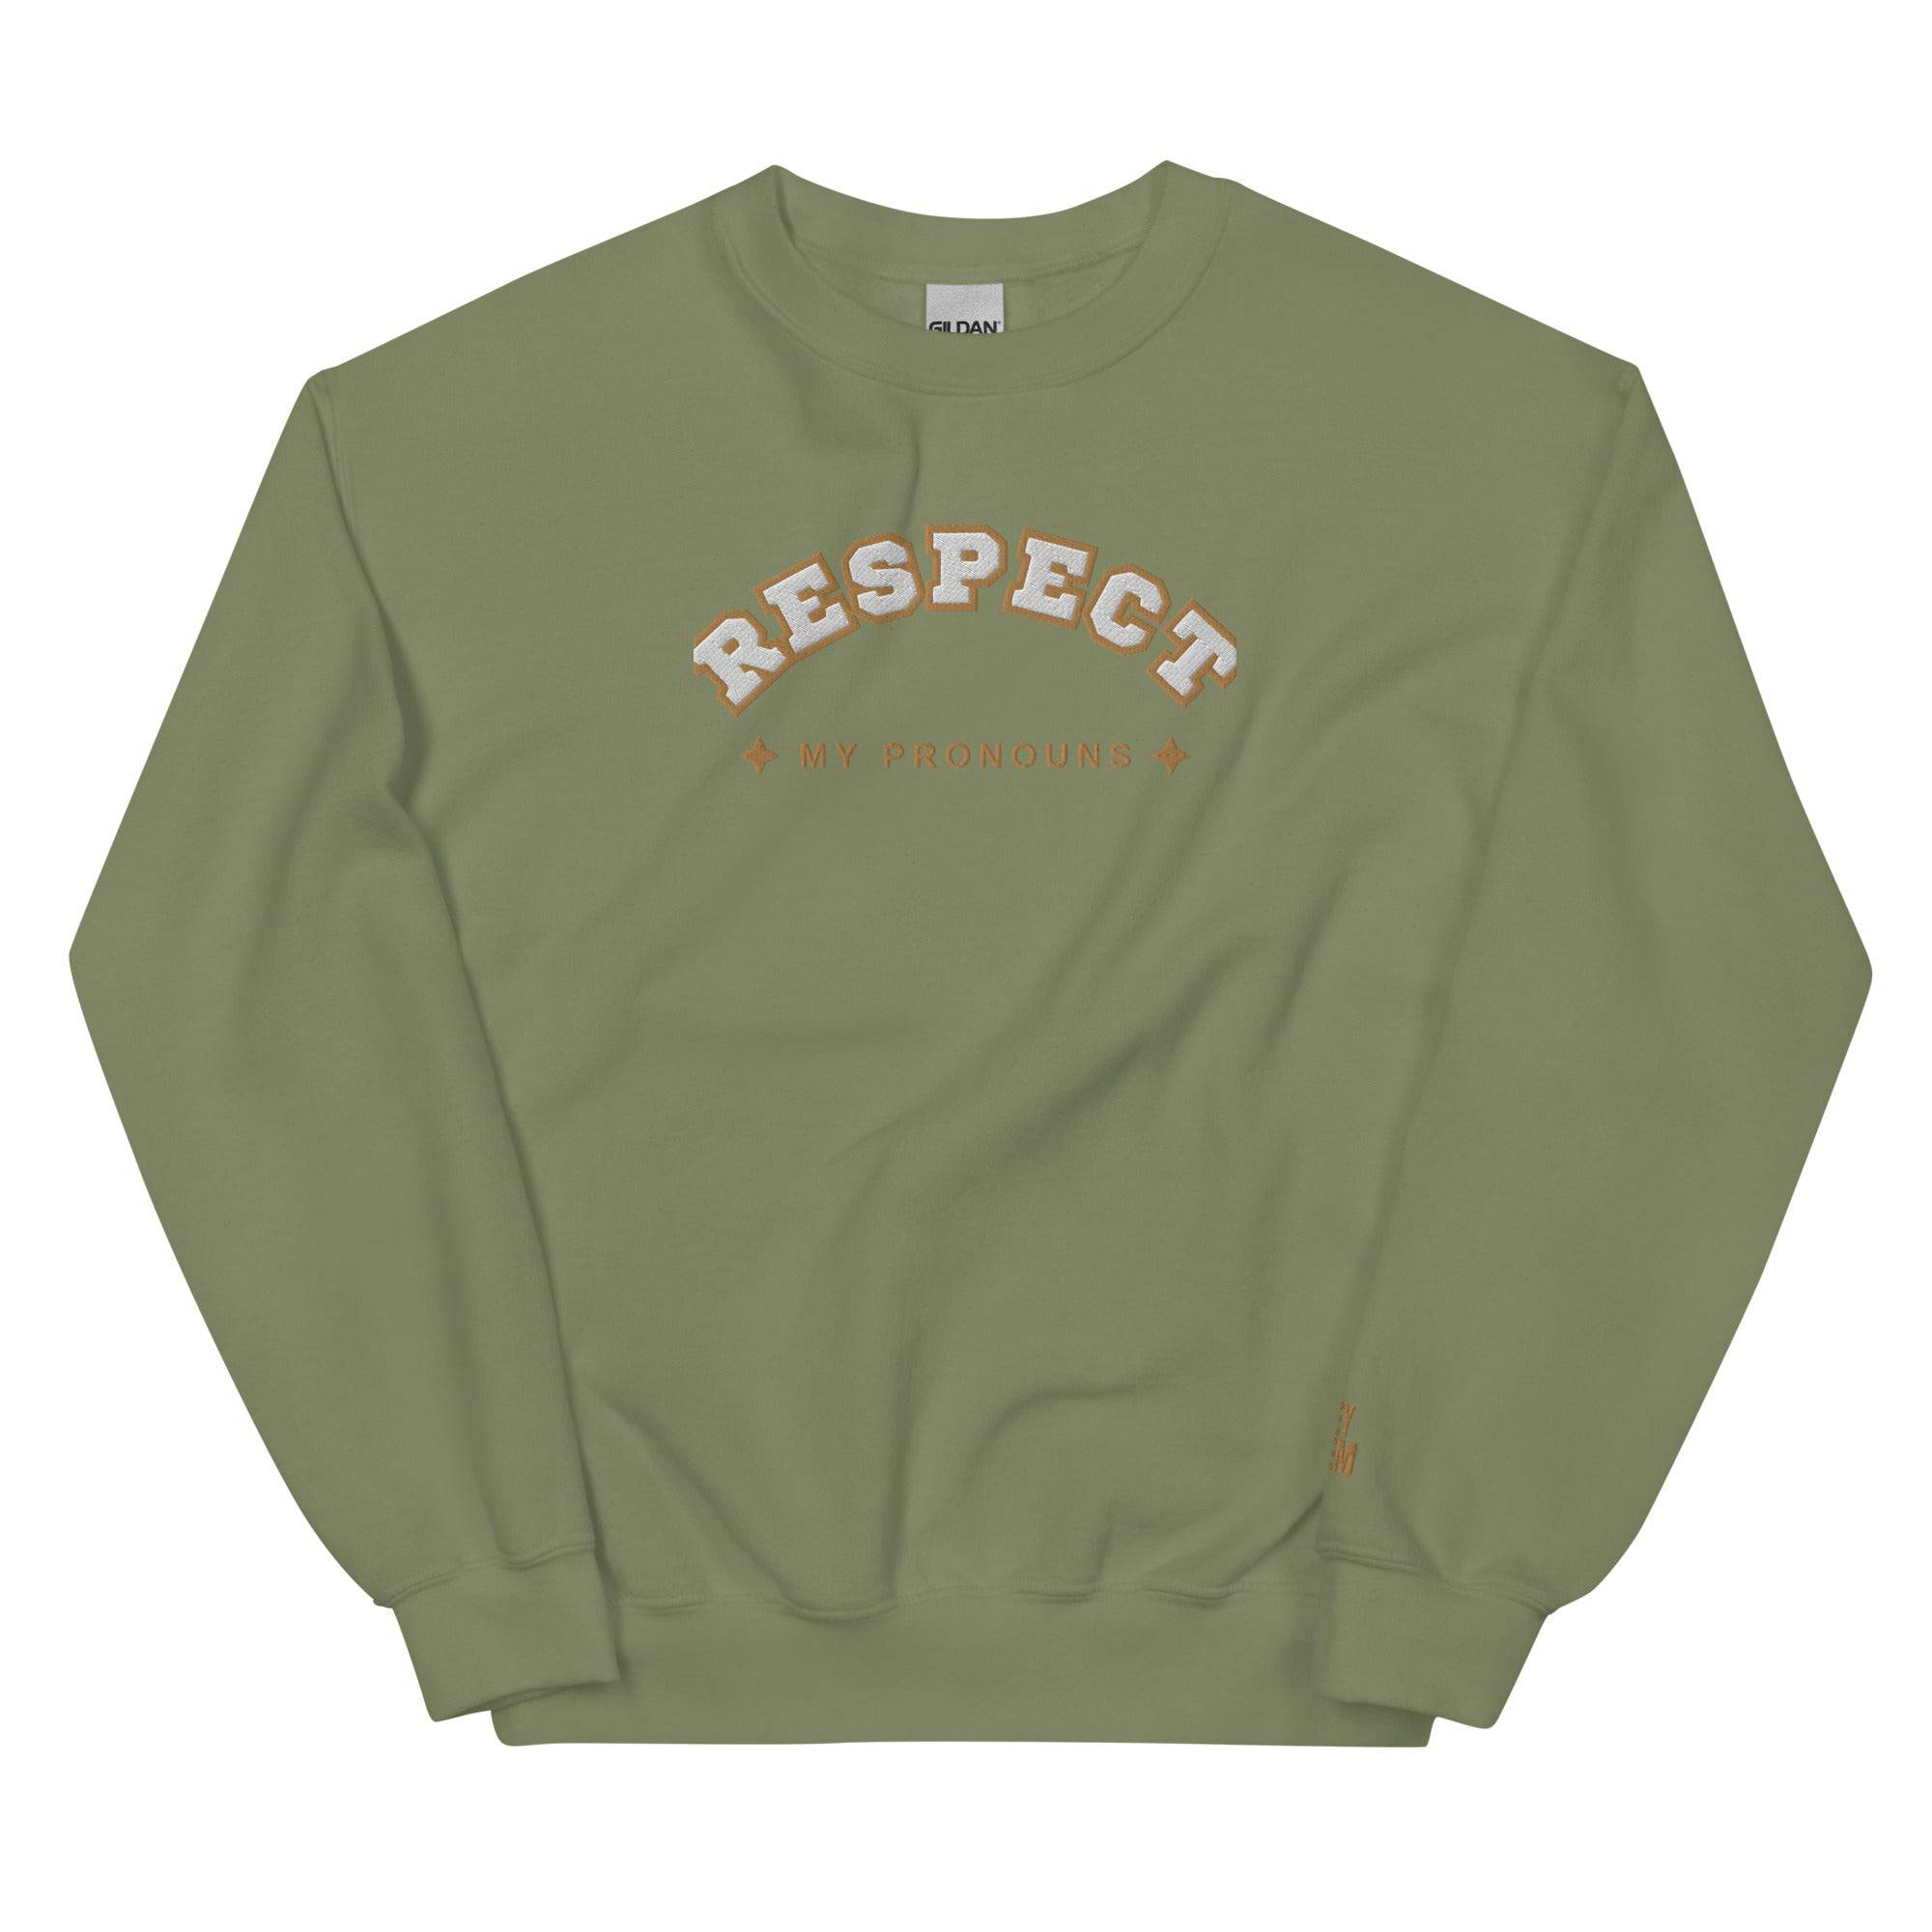 Respect My Pronouns Unisex Sweatshirt - Rose Gold Co. Shop